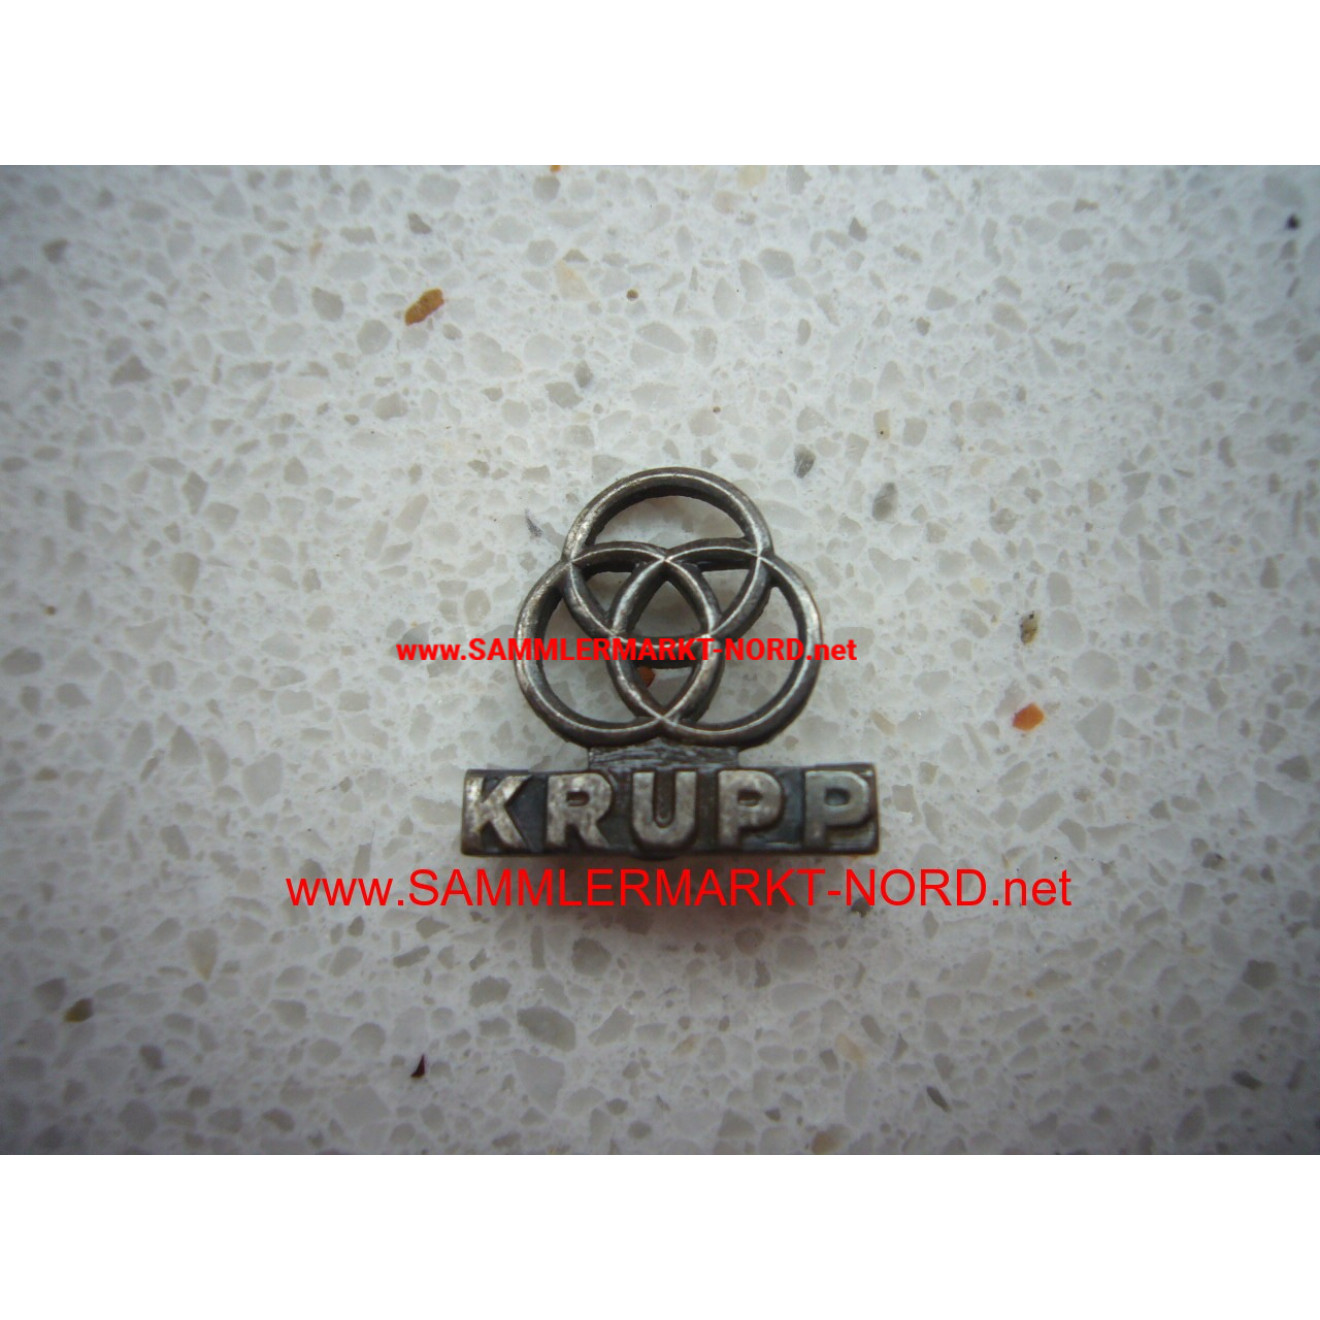 Friedrich Krupp AG - company badge